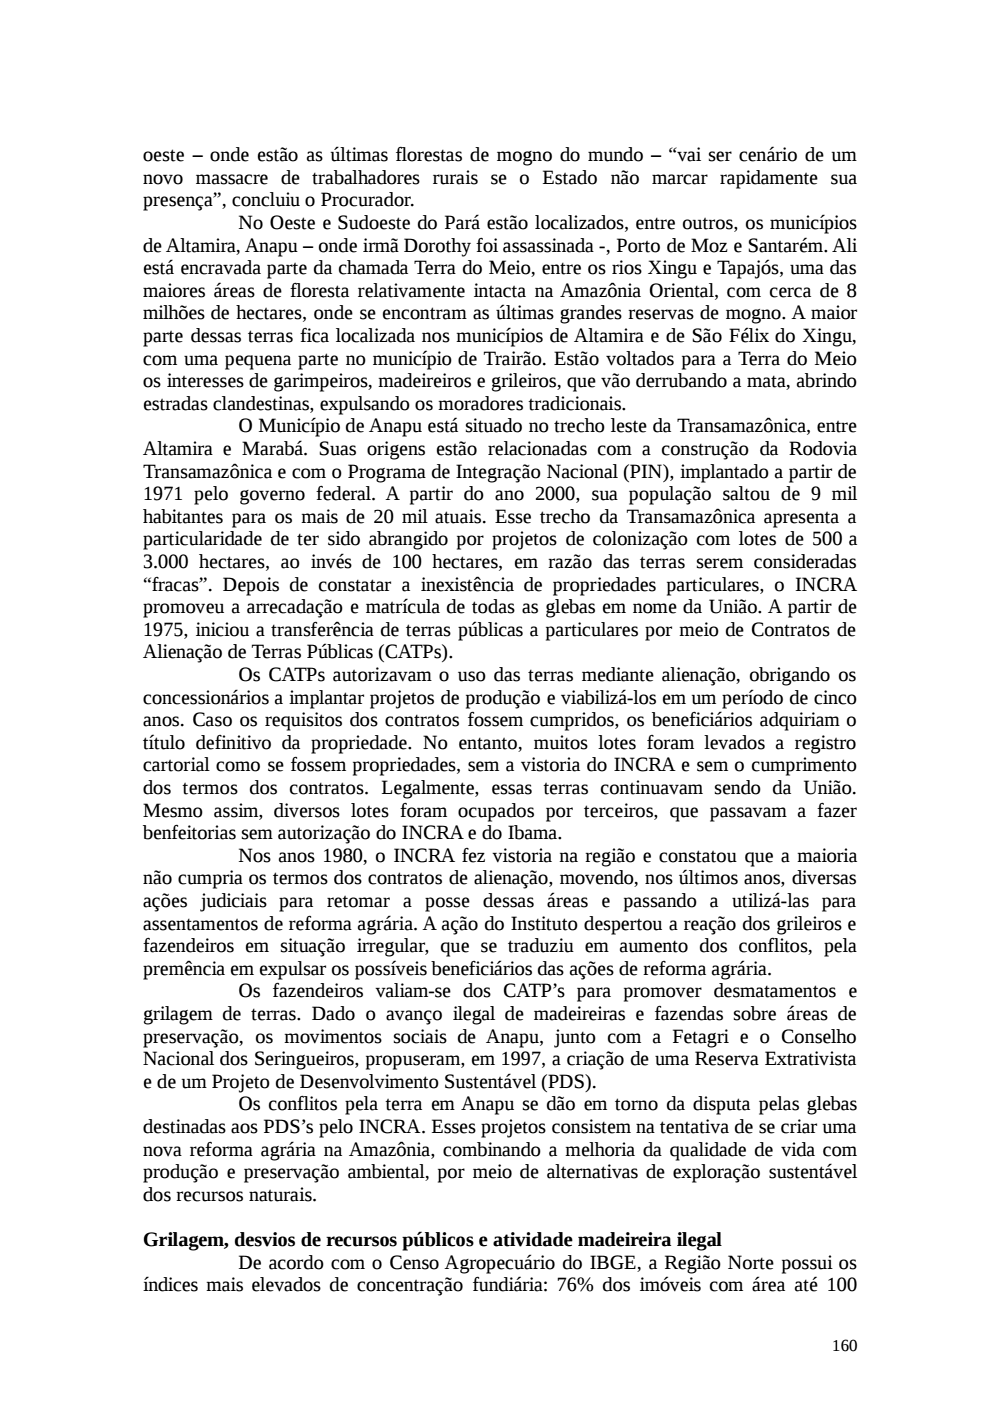 Page 160 from Relatório final da comissão